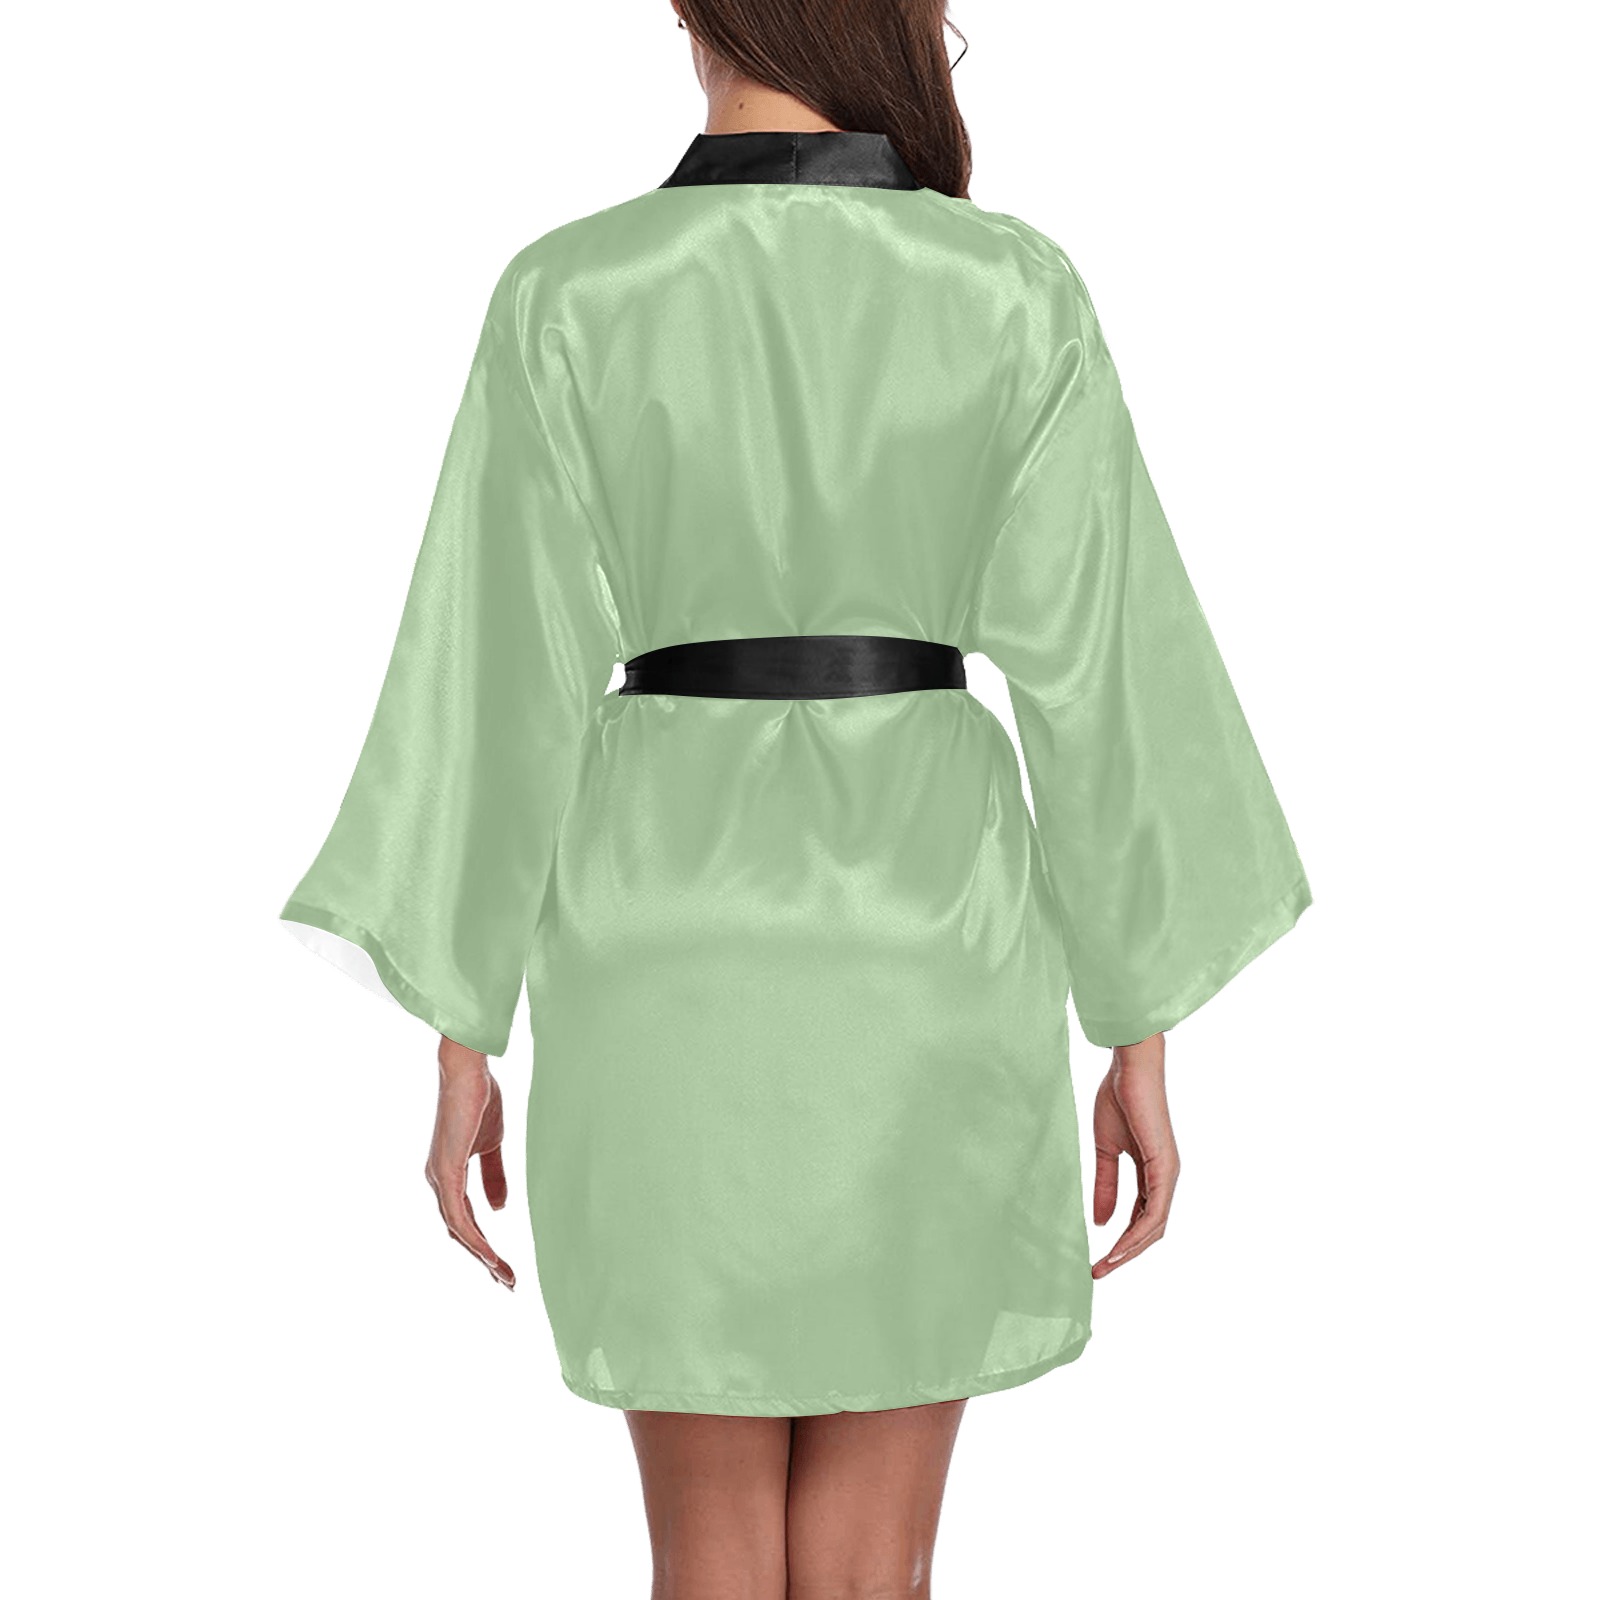 Fair Green Long Sleeve Kimono Robe